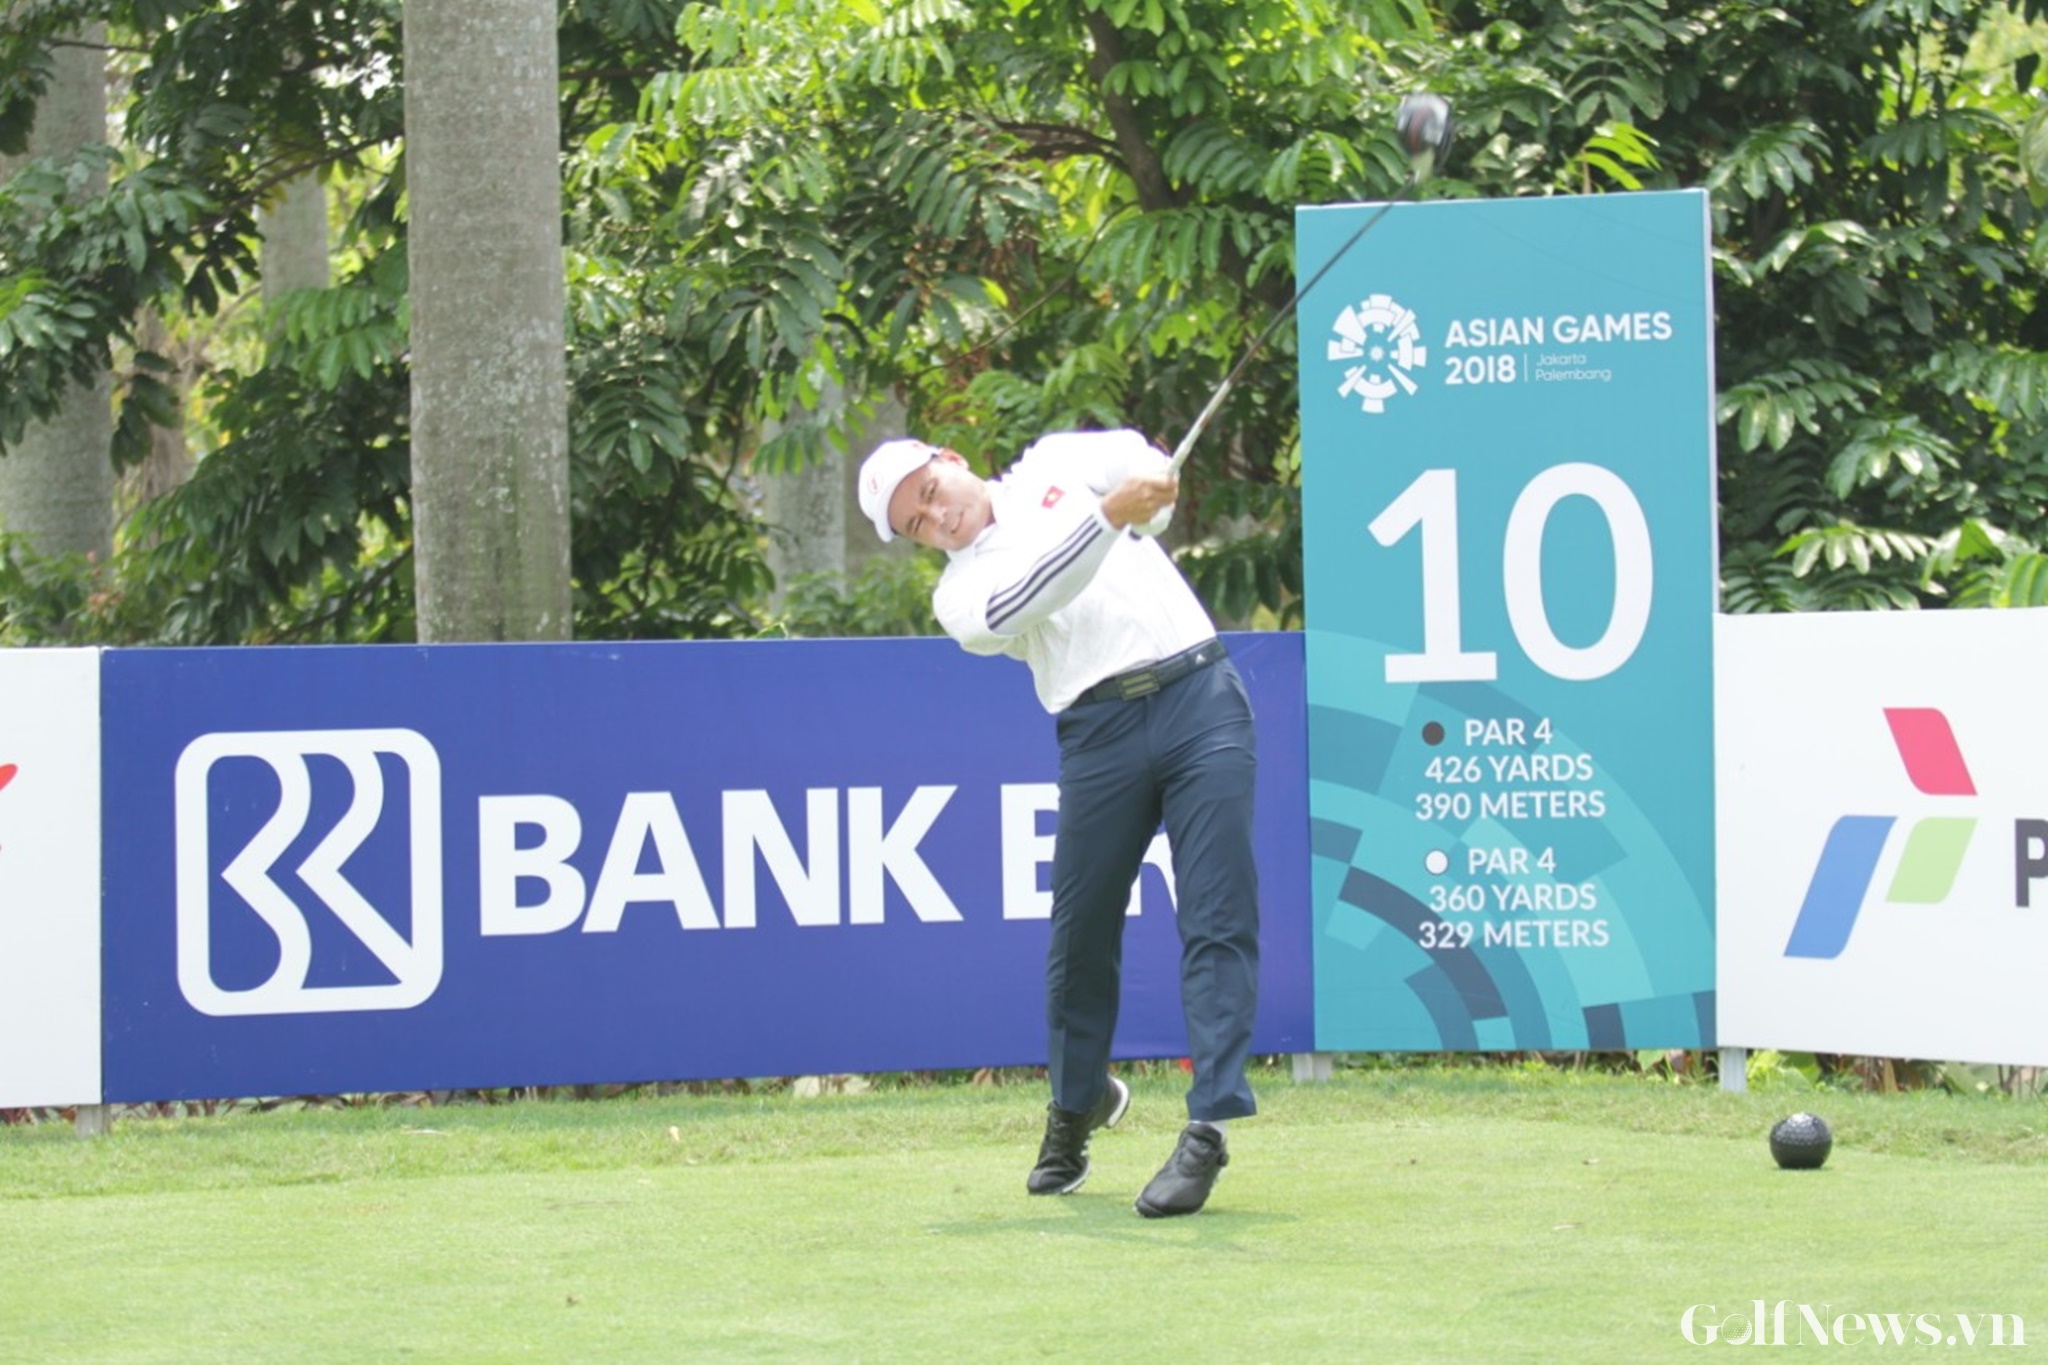 Tuyển Nam hoàn thành trọn vẹn Đại hội thể thao cấp châu lục, tiếp lửa golf Việt tại đấu trường quốc tế